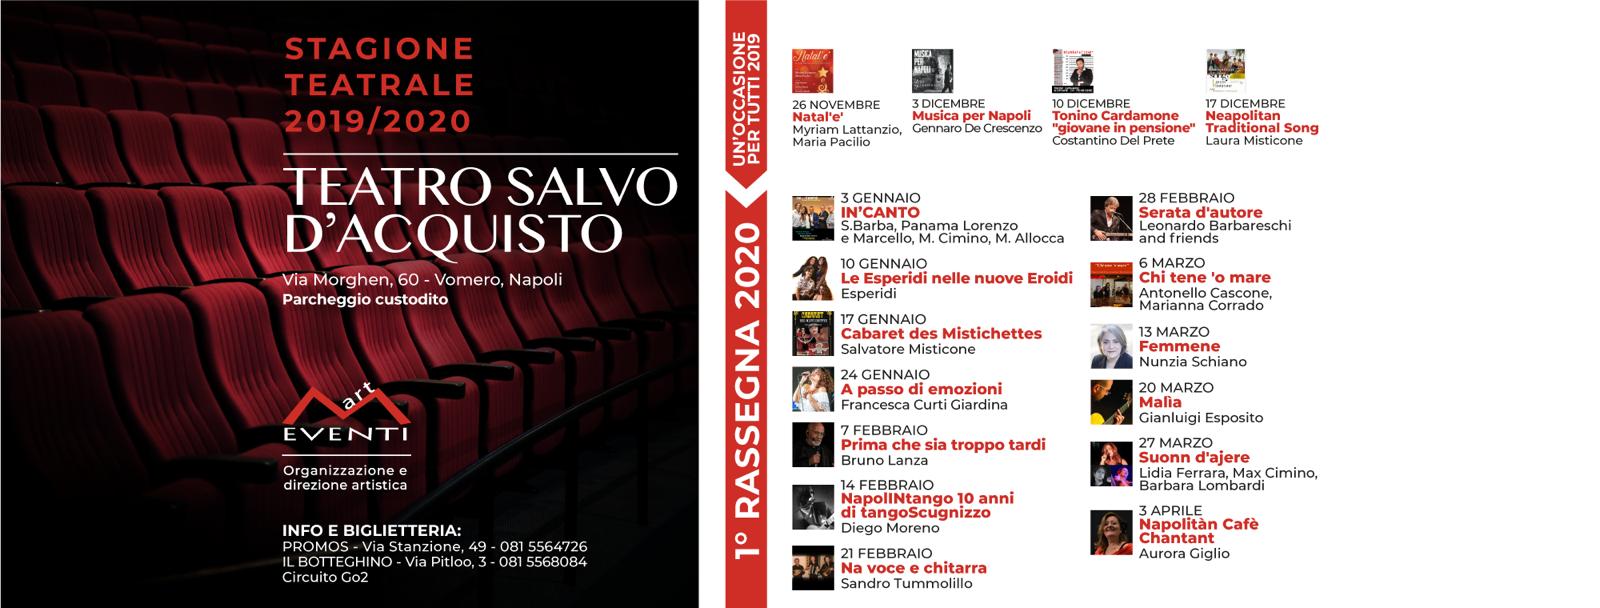 ‘Musica per Napoli’ con Gennaro De Crescenzo al Teatro Salvo D’Acquisto di Napoli